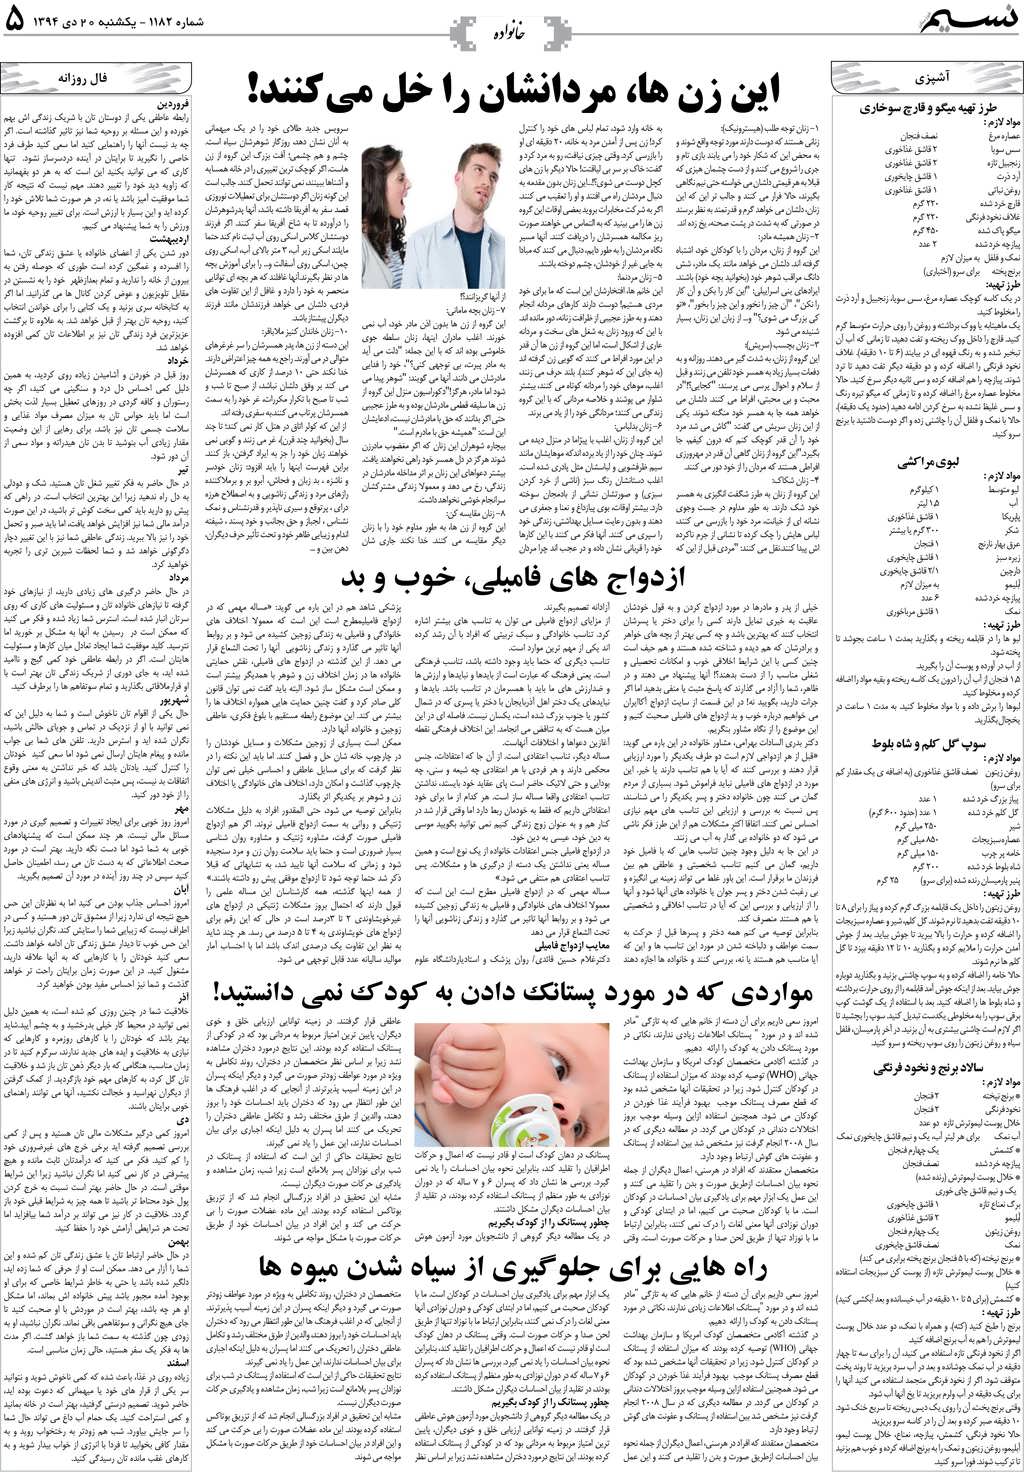 صفحه خانواده روزنامه نسیم شماره 1182